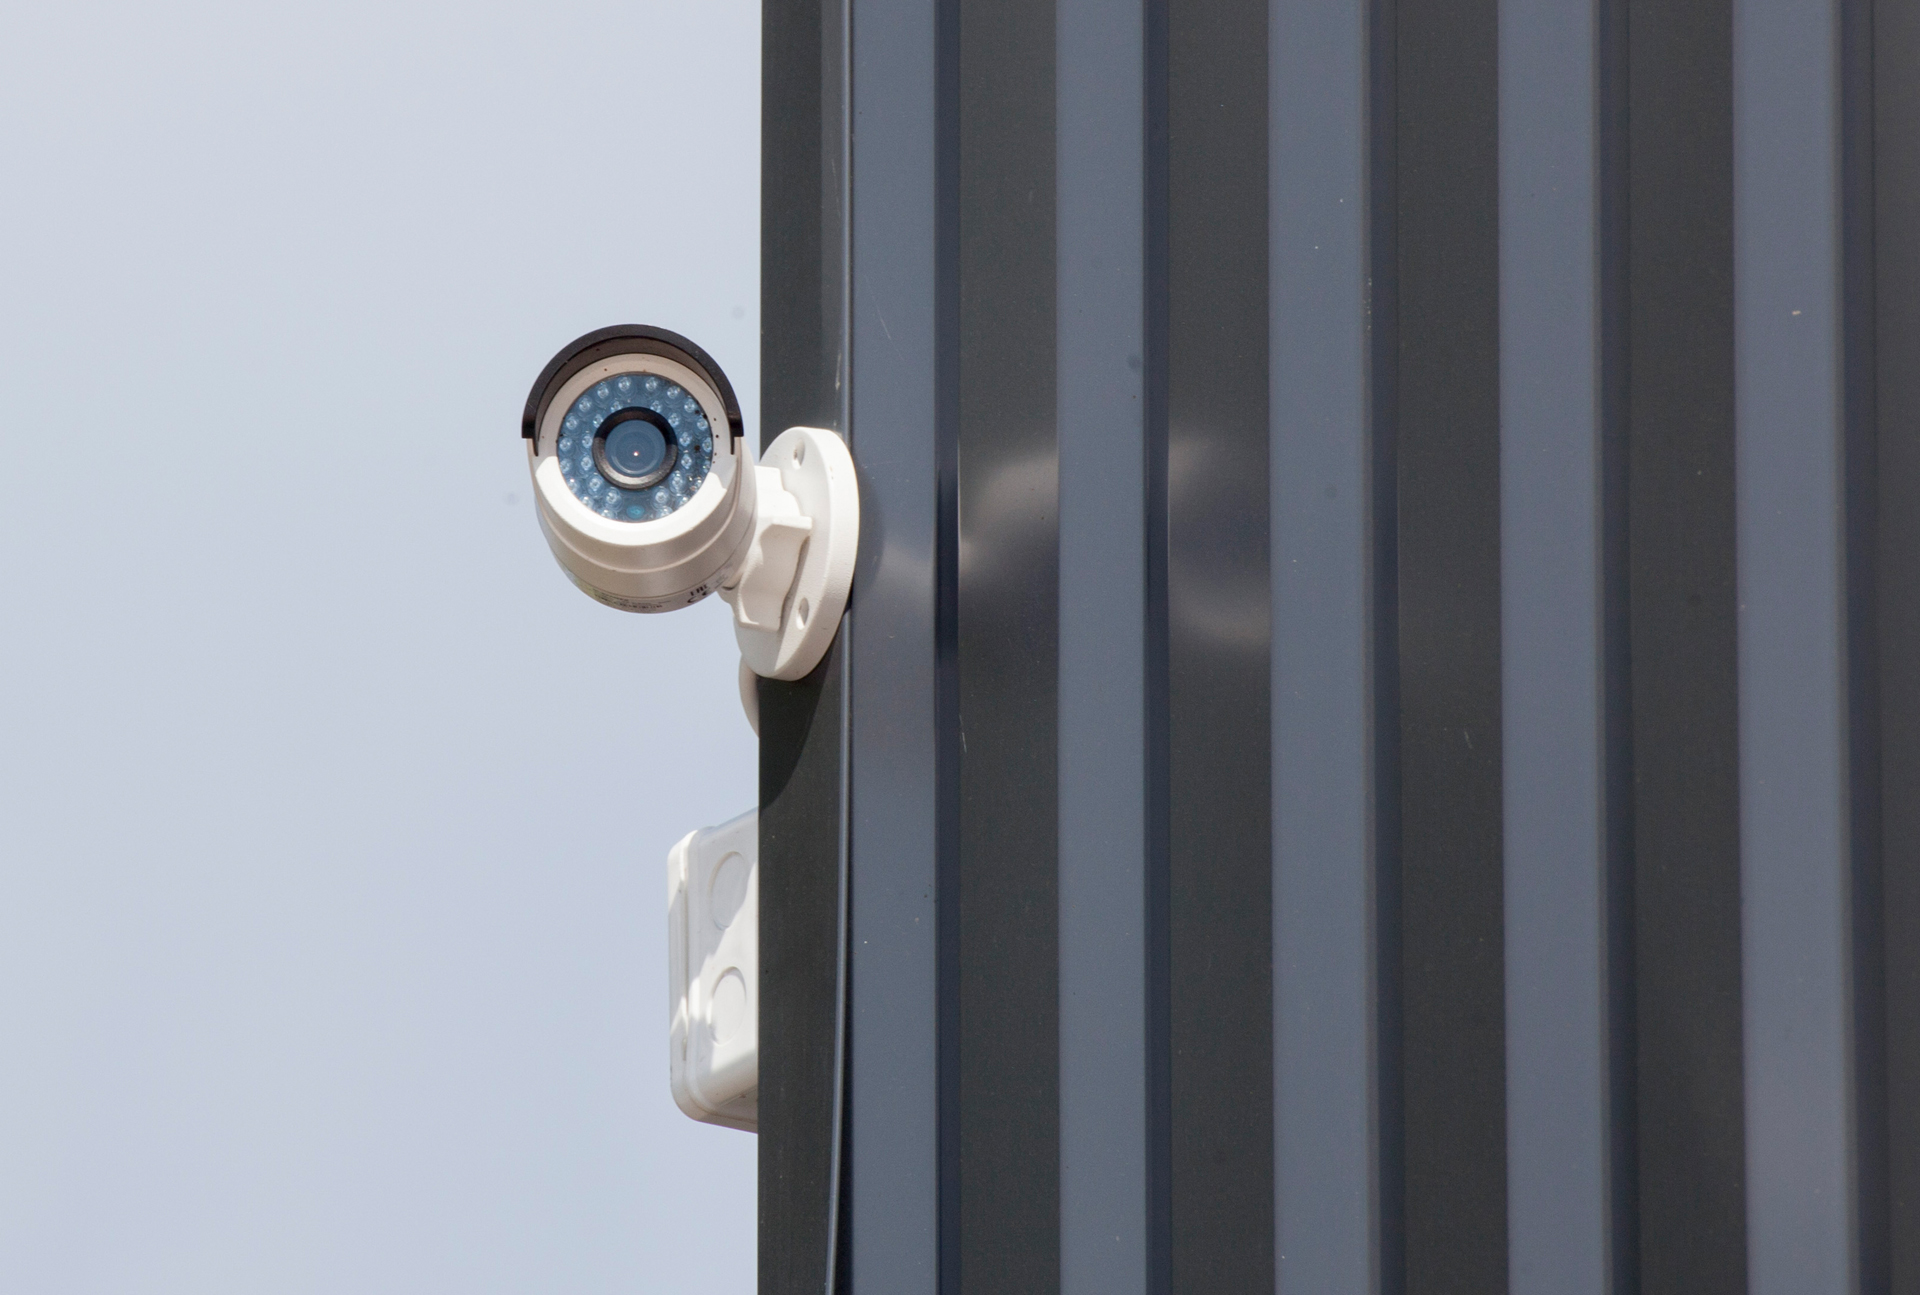 За второй квартал смоляне приобрели почти 400 камер видеонаблюдения от «Ростелекома»